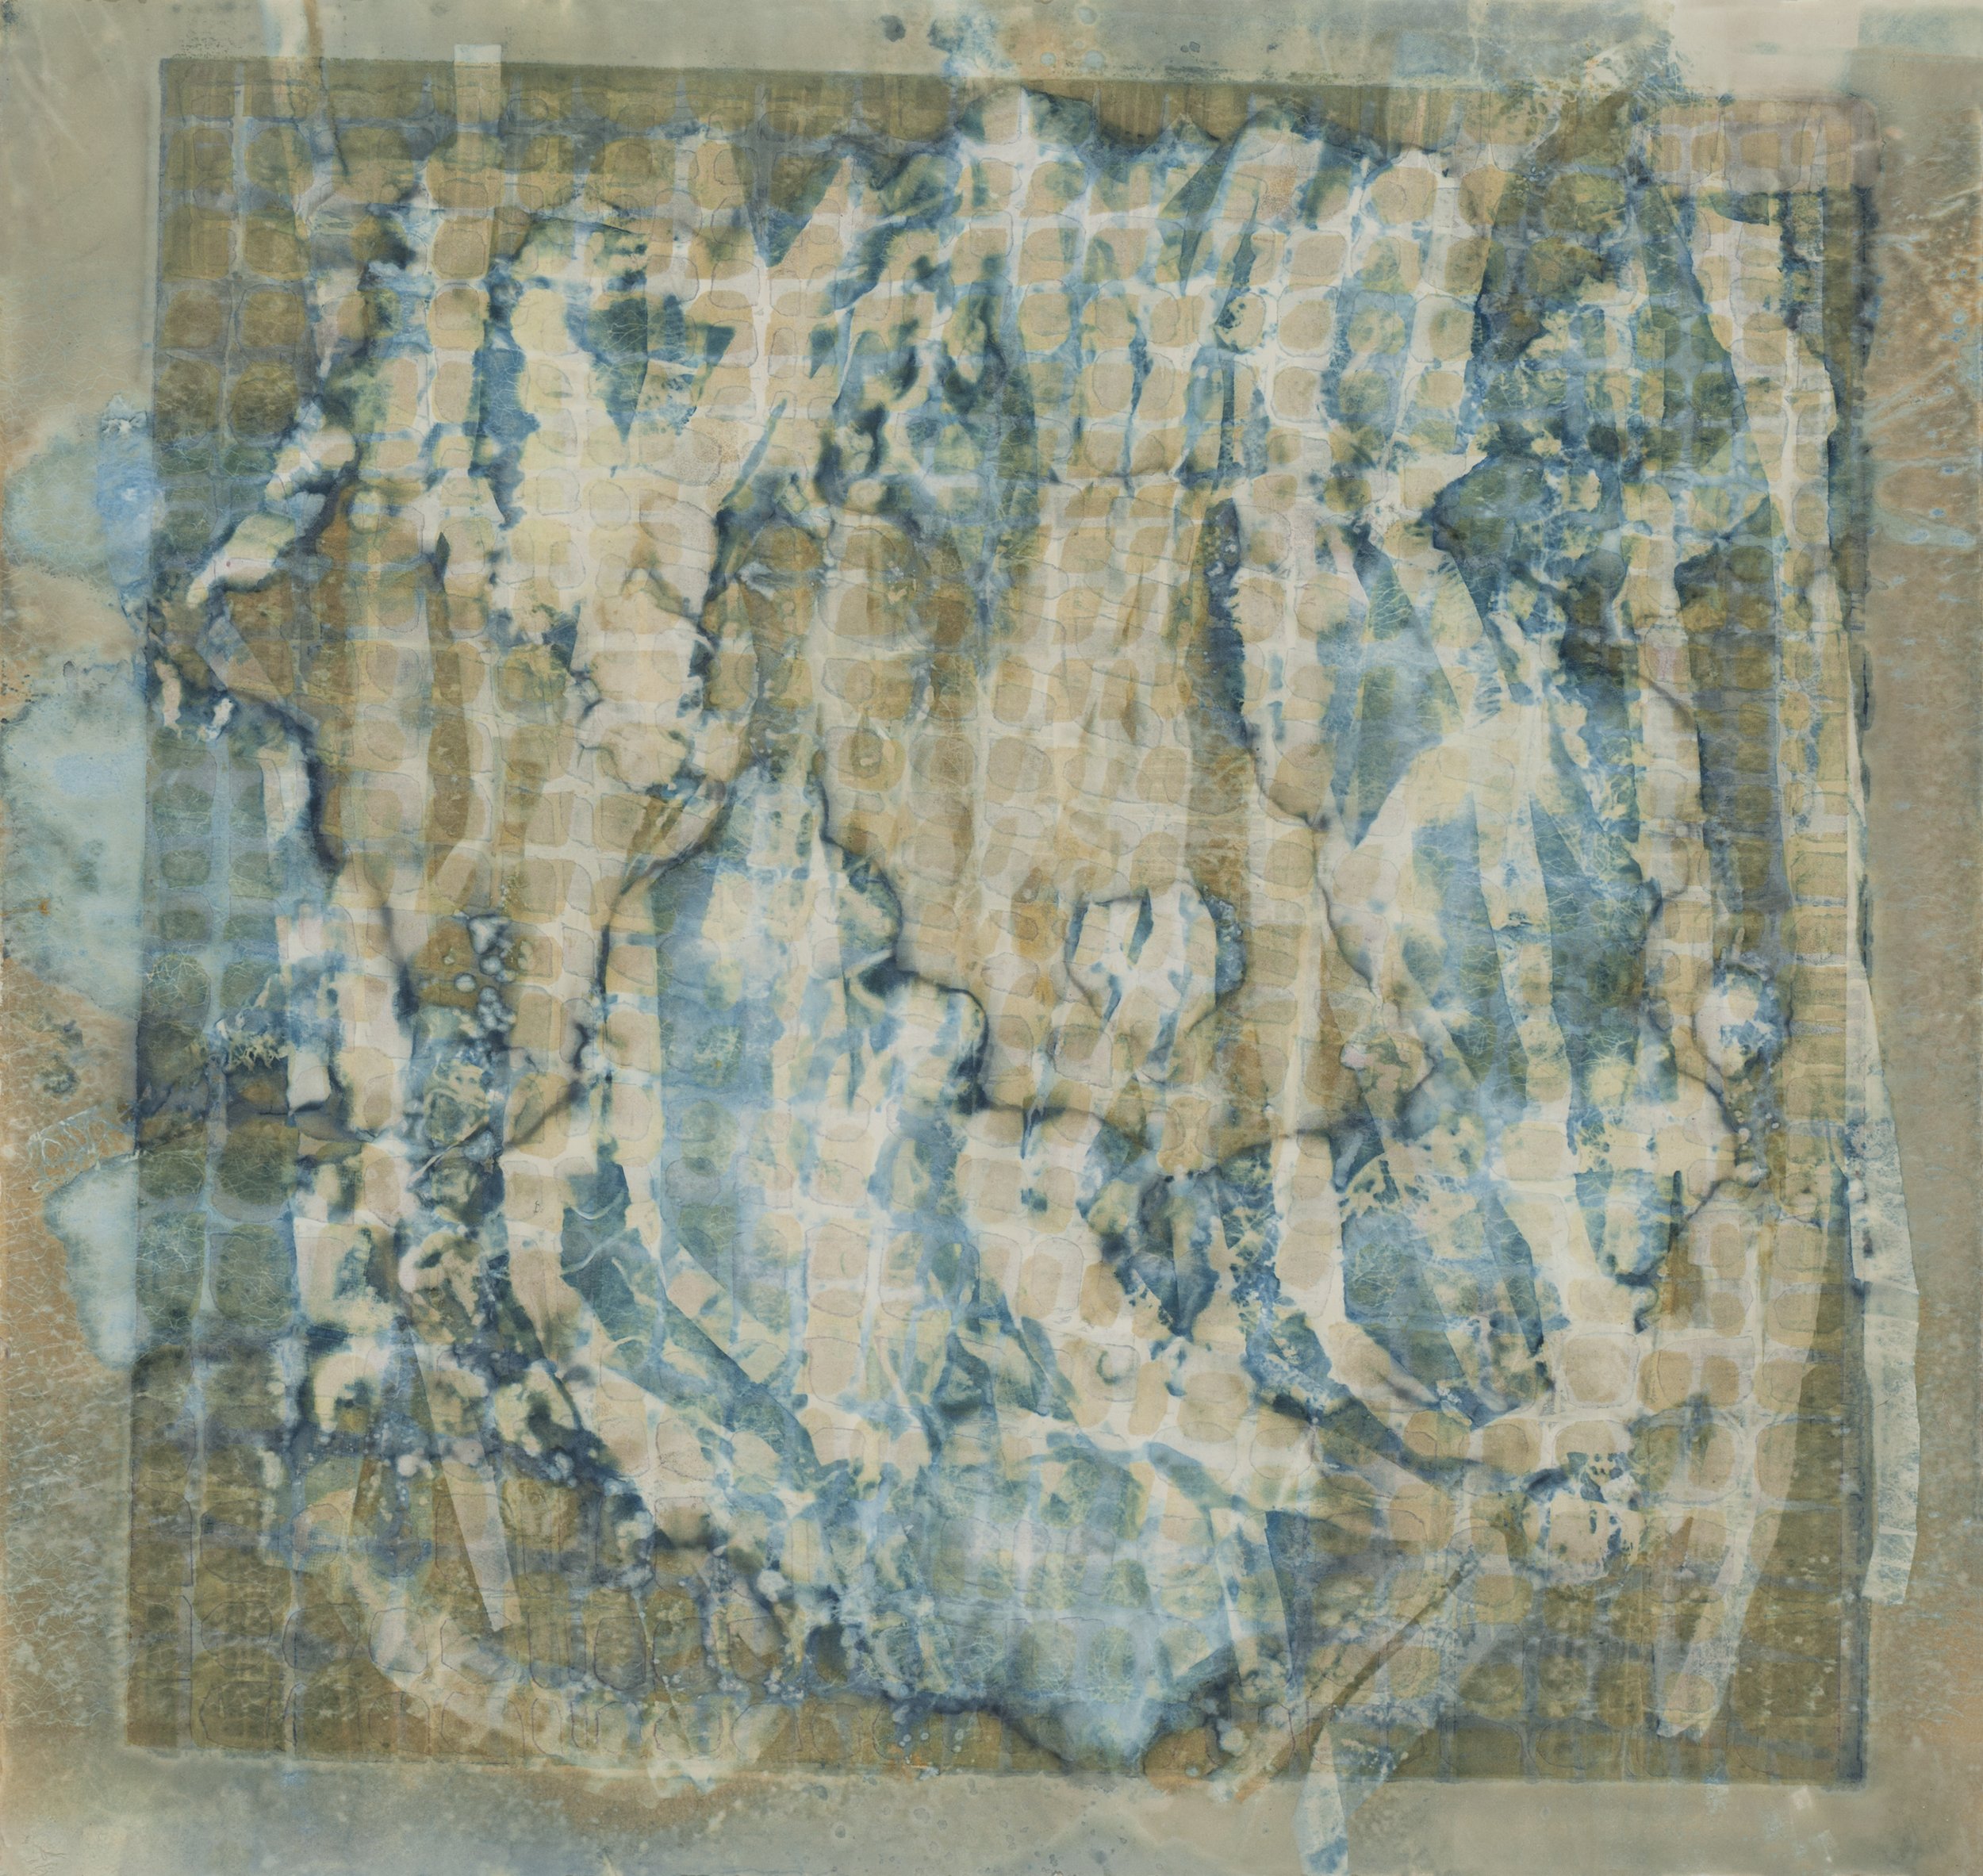 &lt;p&gt;&lt;strong&gt;SUZANNE MOSELEY&lt;/strong&gt;wet cyanotypes, fiber sculpture&lt;a href="/suzanne-moseley-ill2022"&gt;More →&lt;/a&gt;&lt;/p&gt;